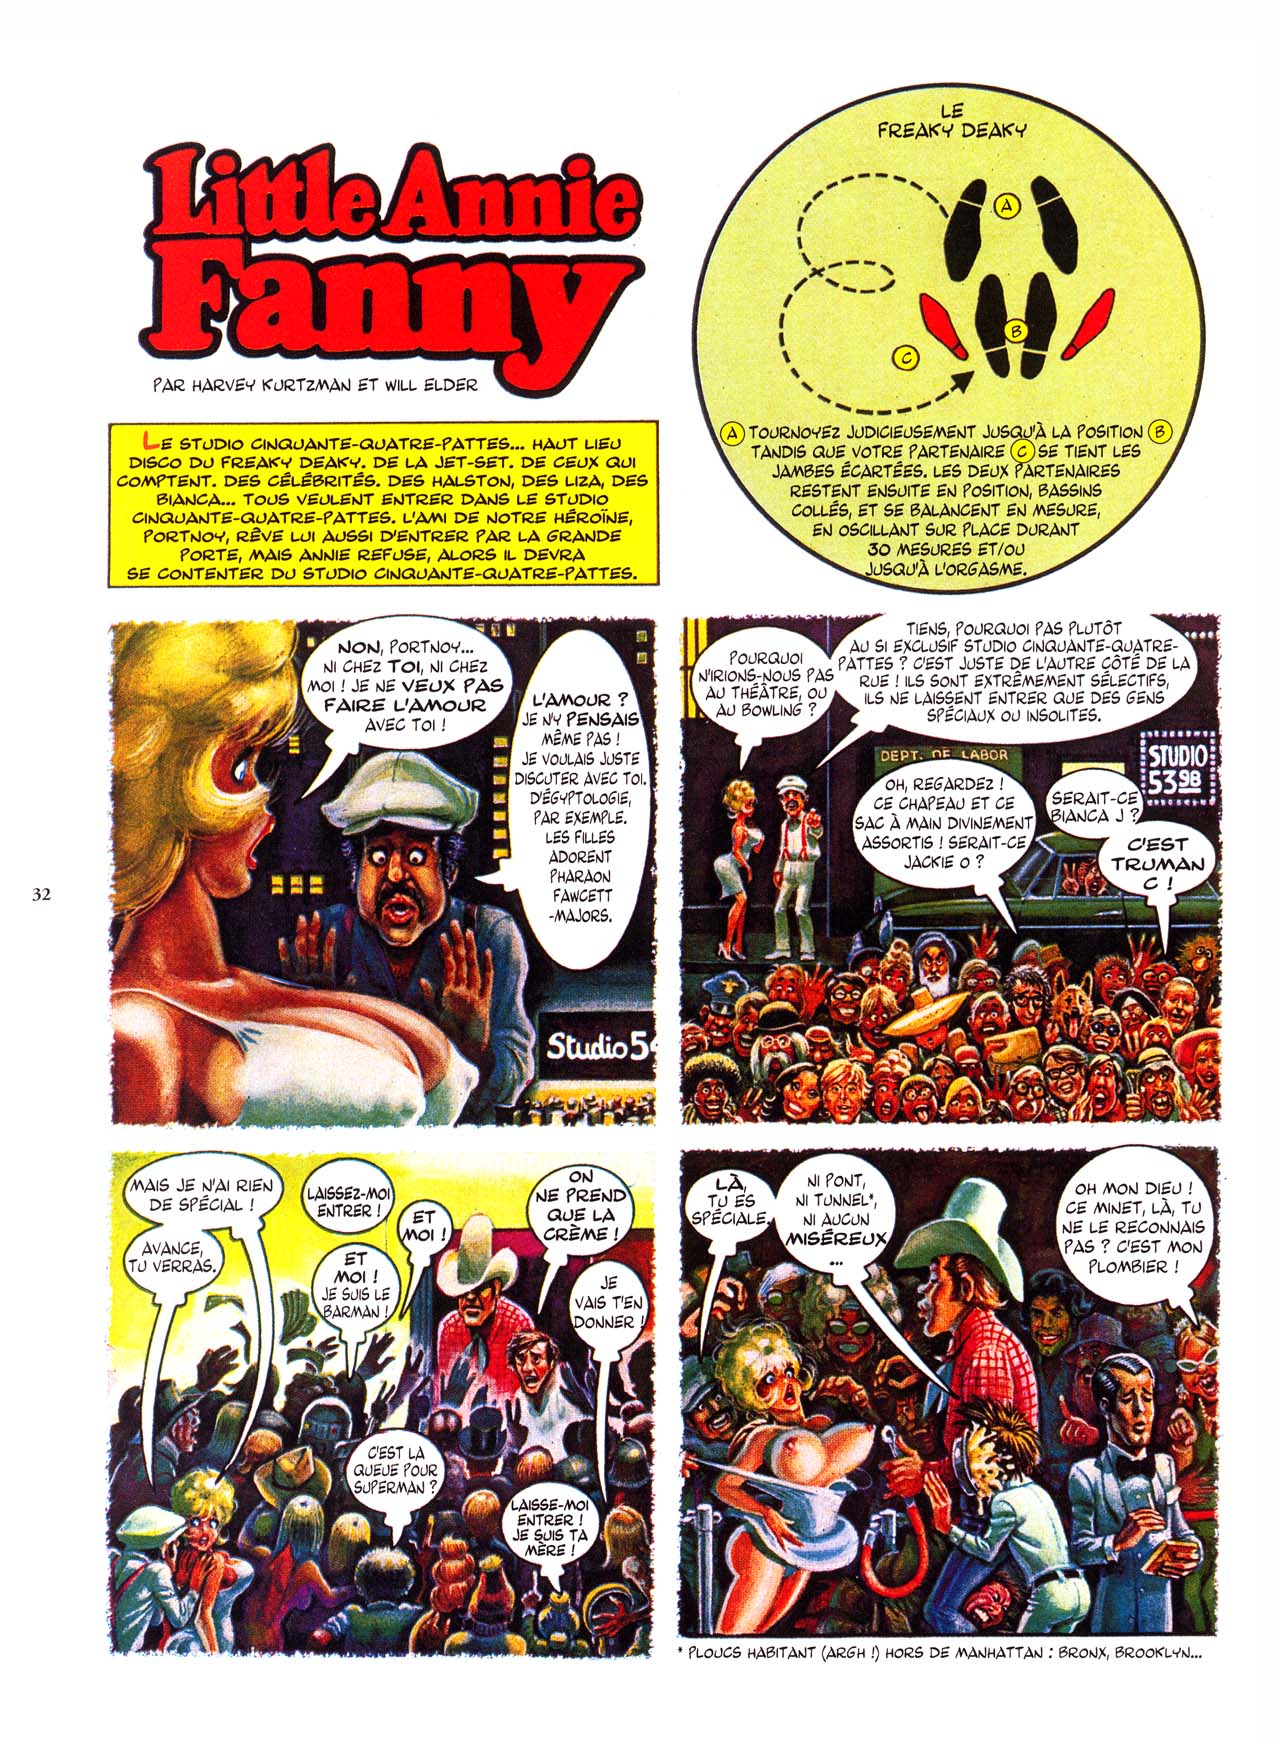 Little Annie Fanny - 04 - 78-88 numero d'image 33